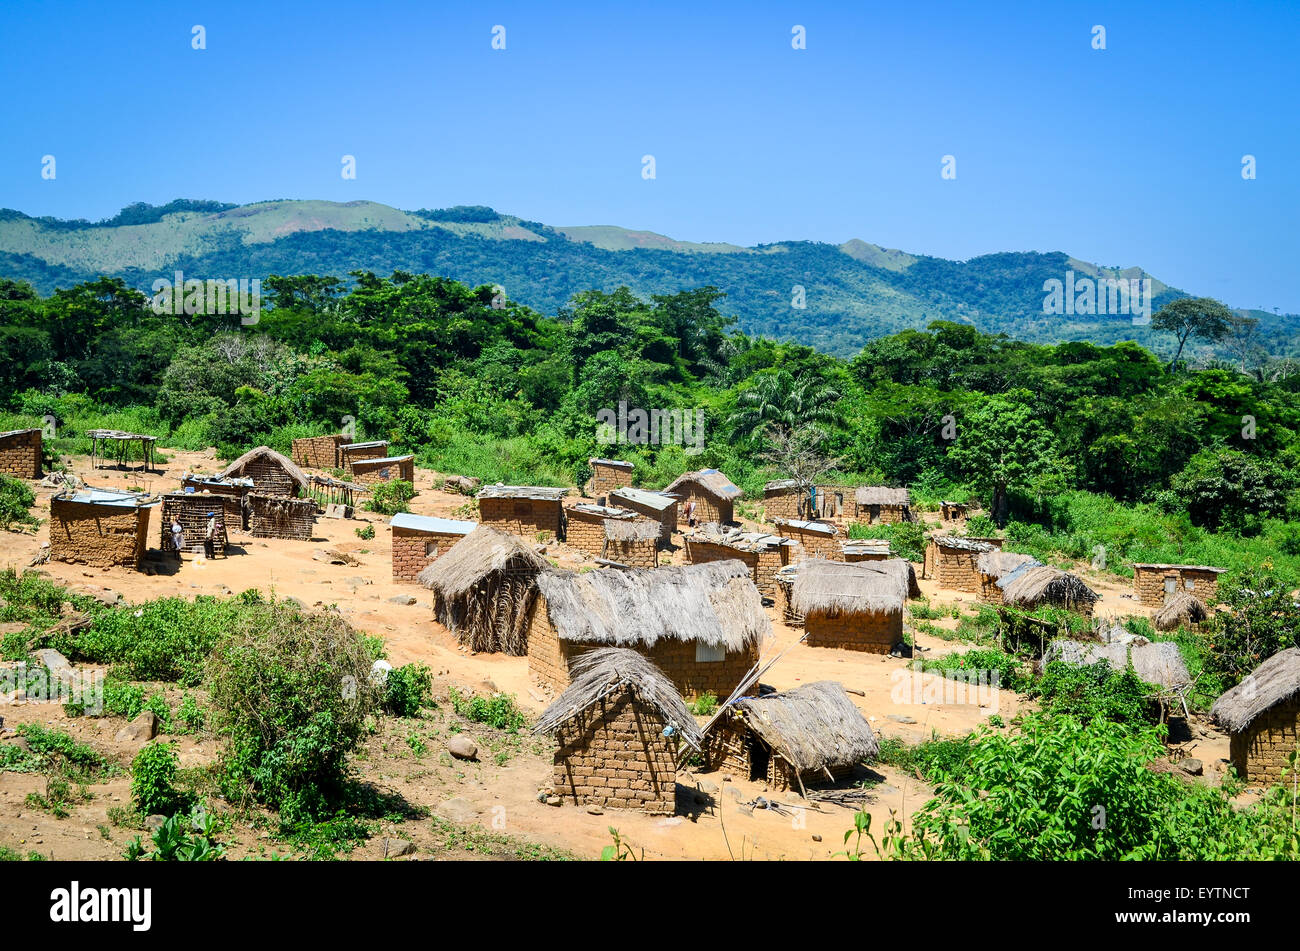 Villaggi di Angola in campagna, con case di fango e tetti di paglia Foto Stock